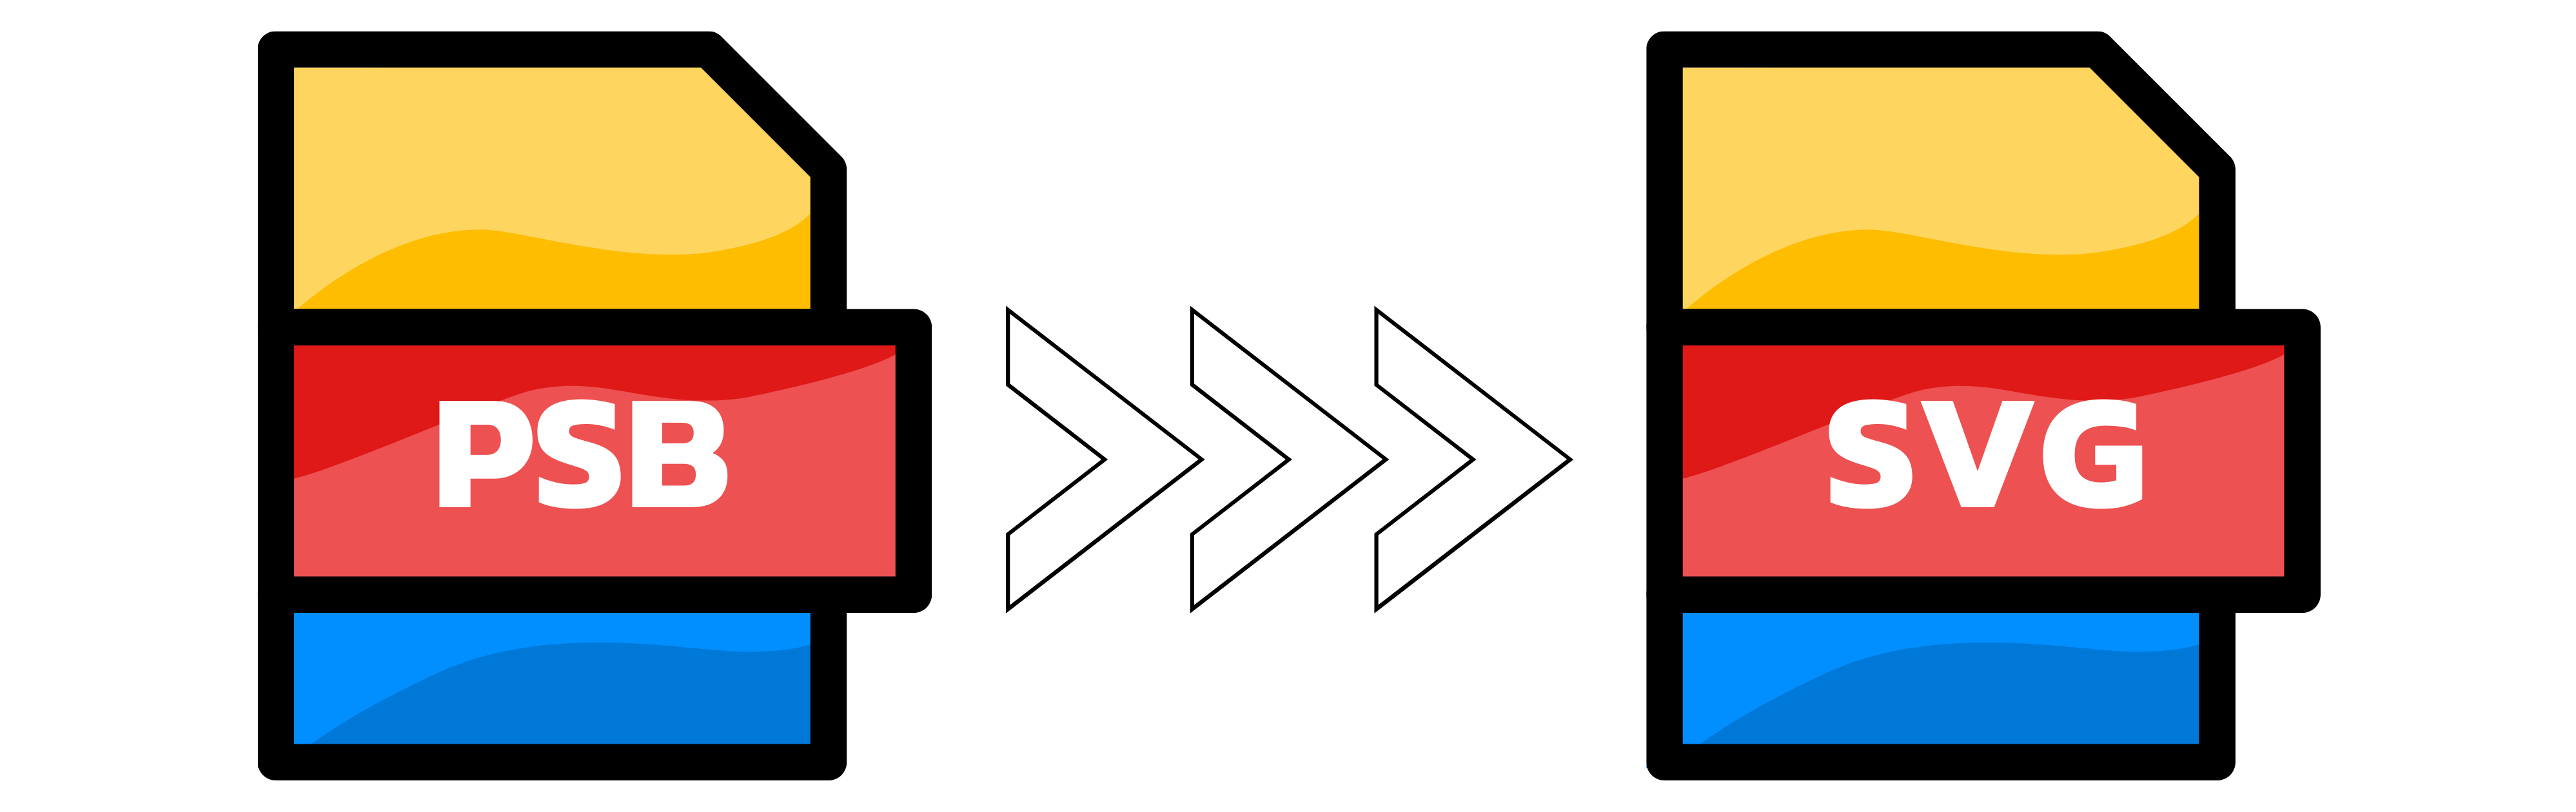 Illustrazione: Conversione di PSB in SVG